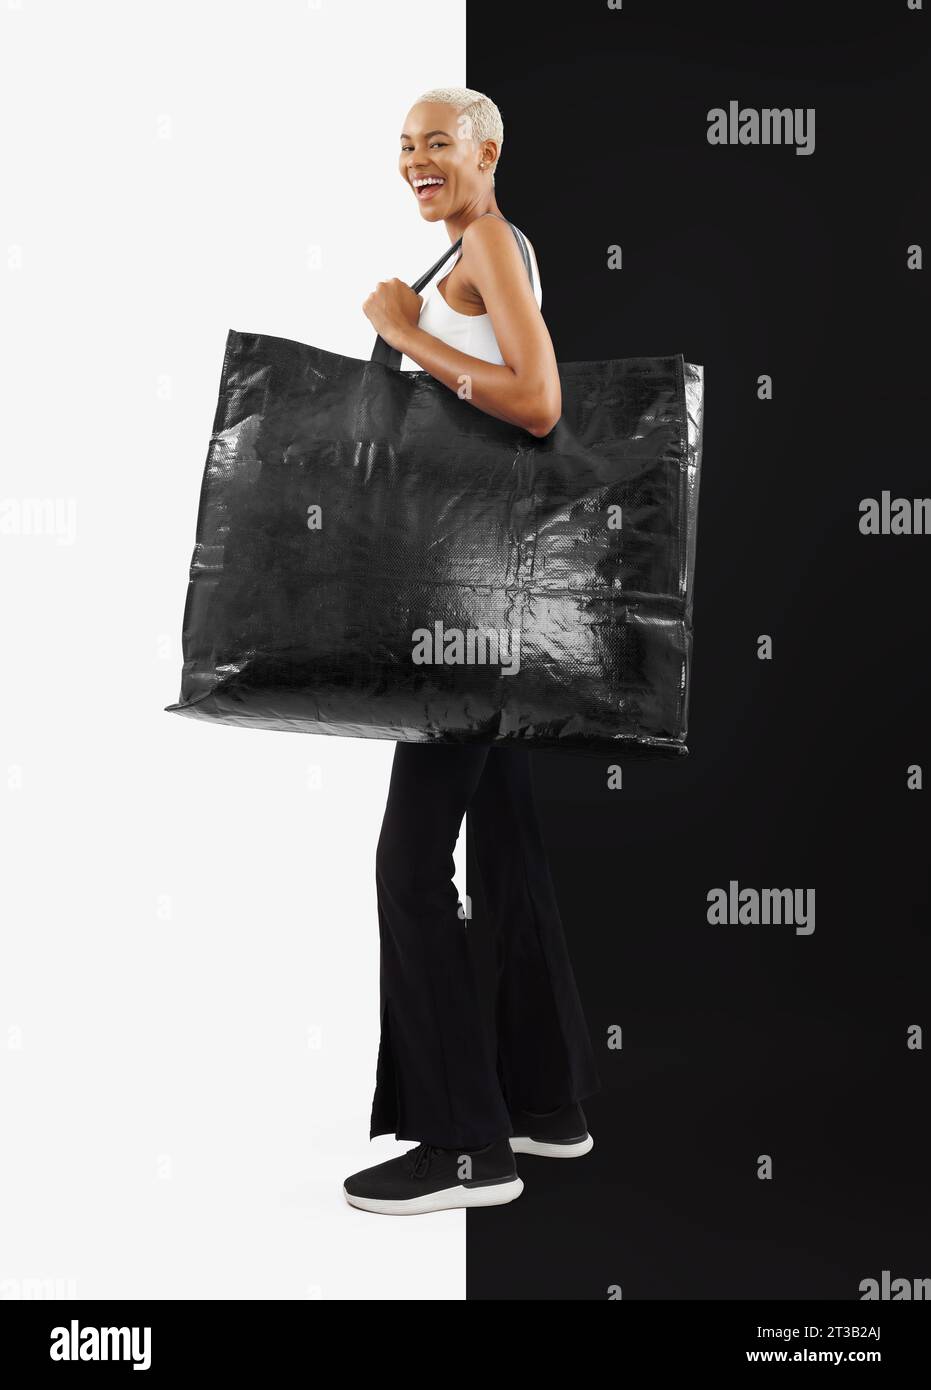 Black Friday Shopping. Femme noire riante, joyeuse et souriante dans une tenue décontractée, tenant un grand sac shopper noir avec espace de copie pour tex écrit Banque D'Images